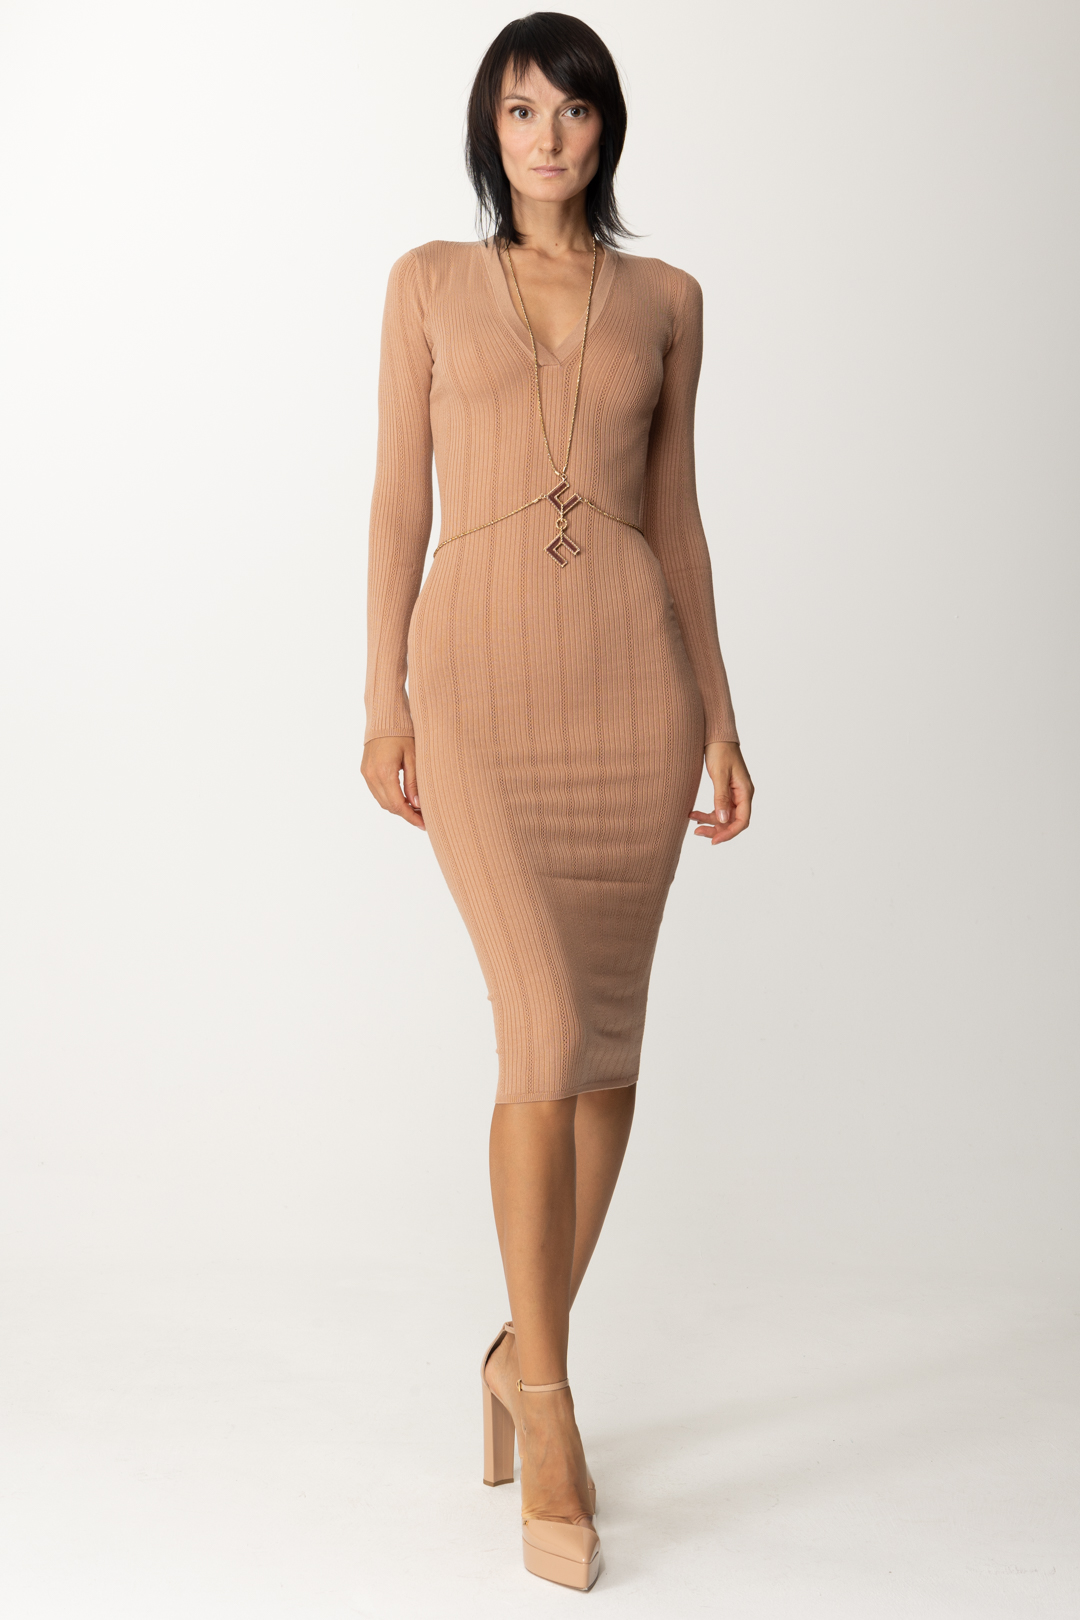 Podgląd: Elisabetta Franchi Dzianinowa sukienka z dodatkiem w kształcie logo SKIN